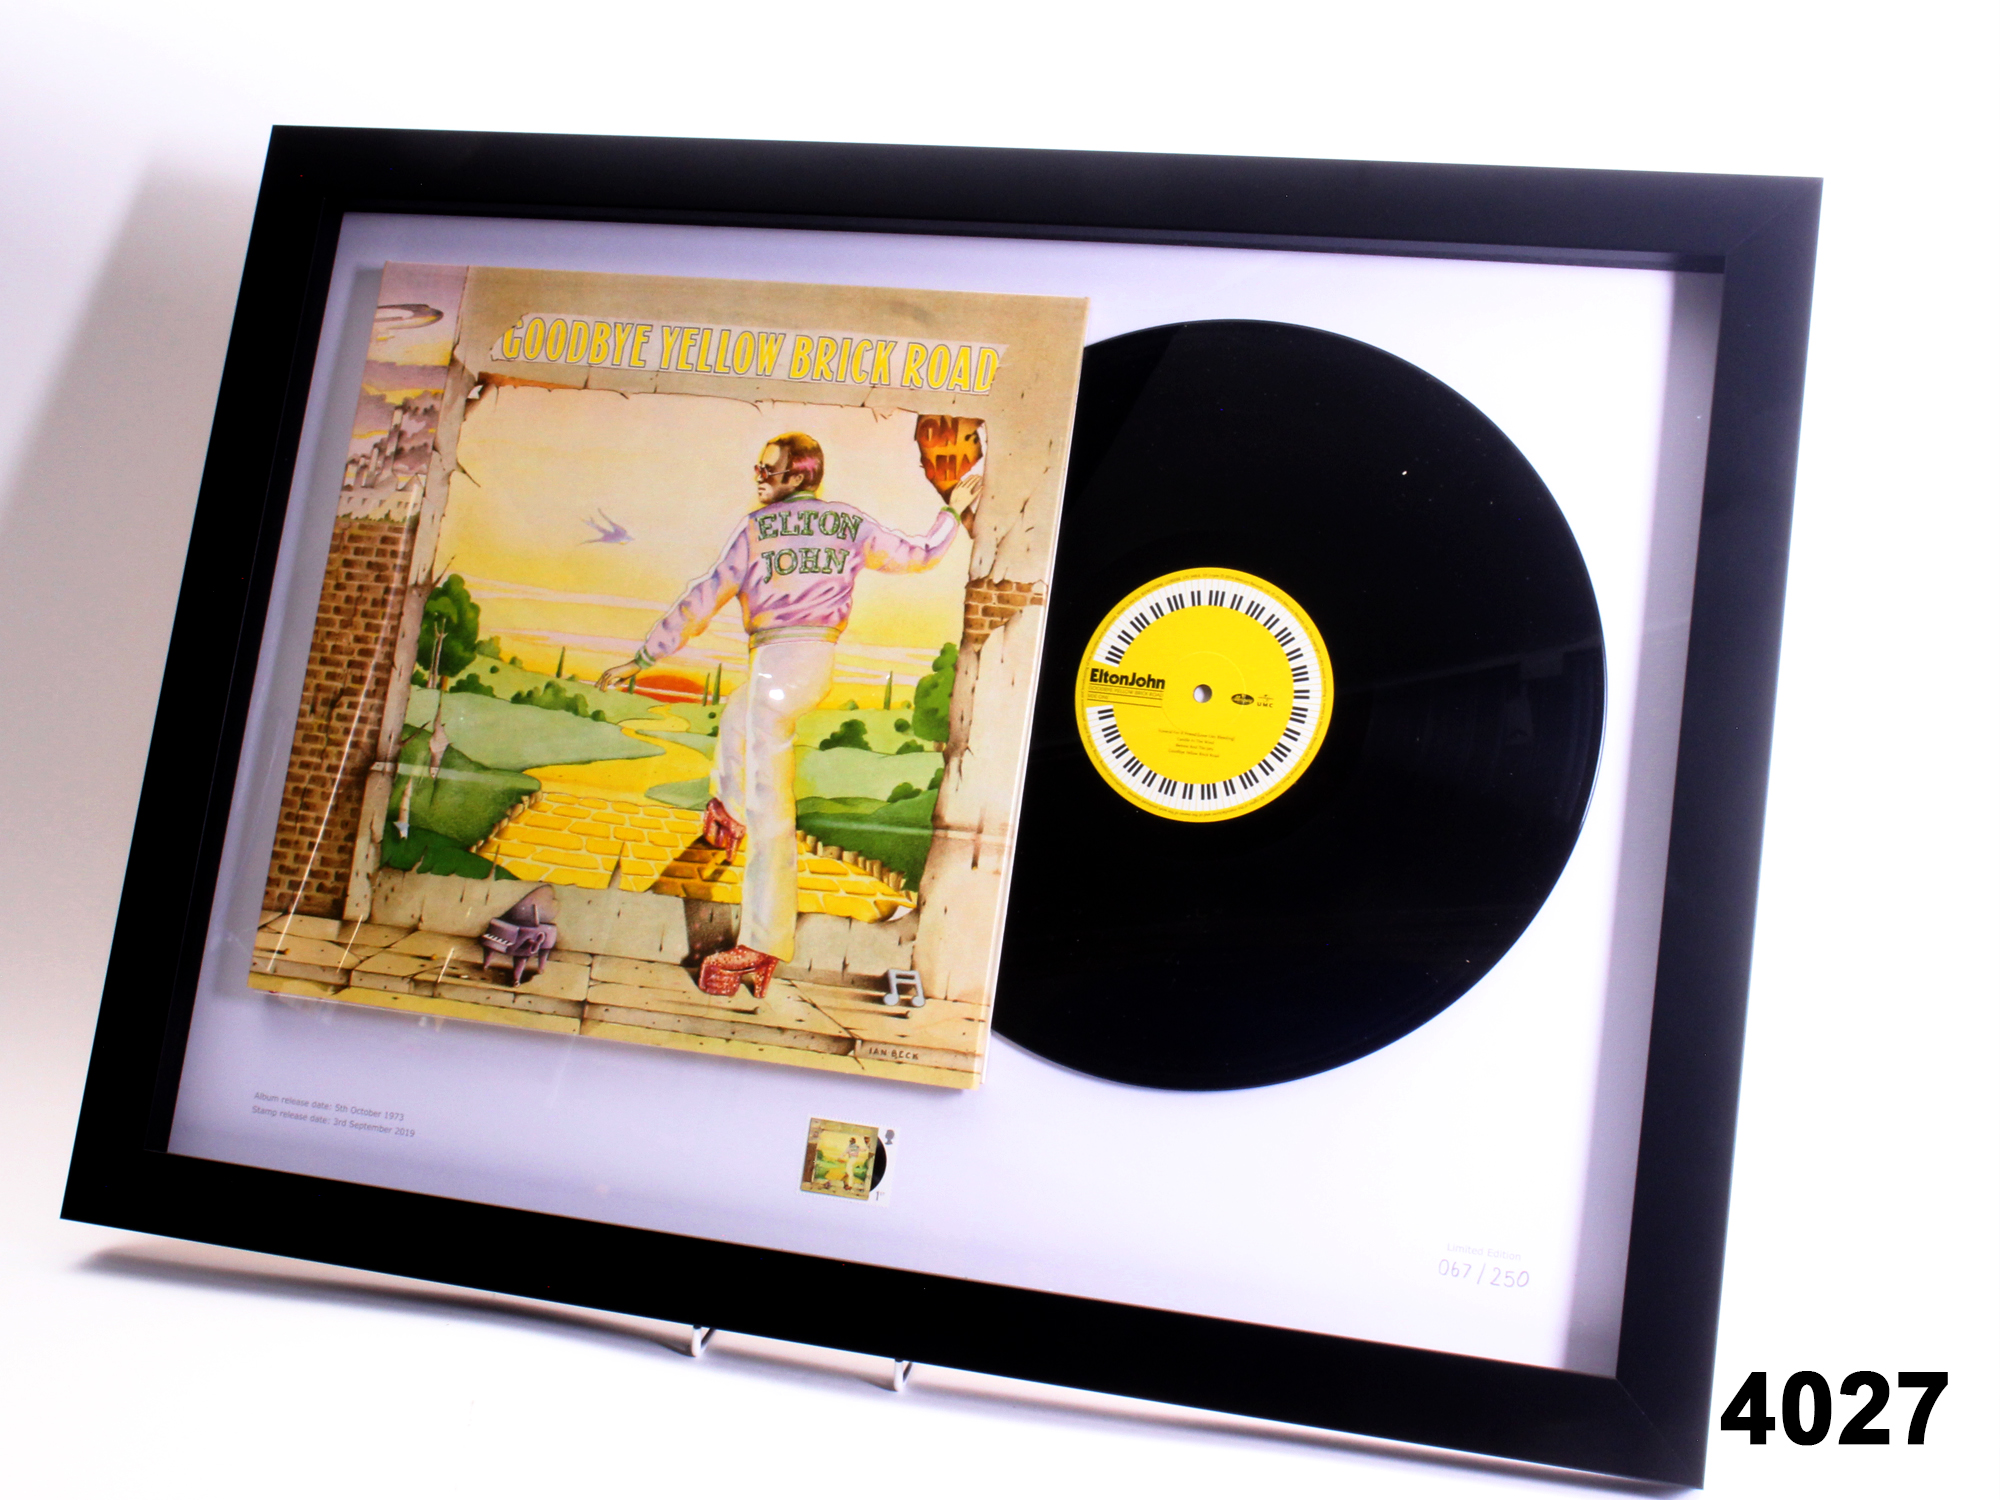 Framed Limited Edition Vinyl (Elton John)